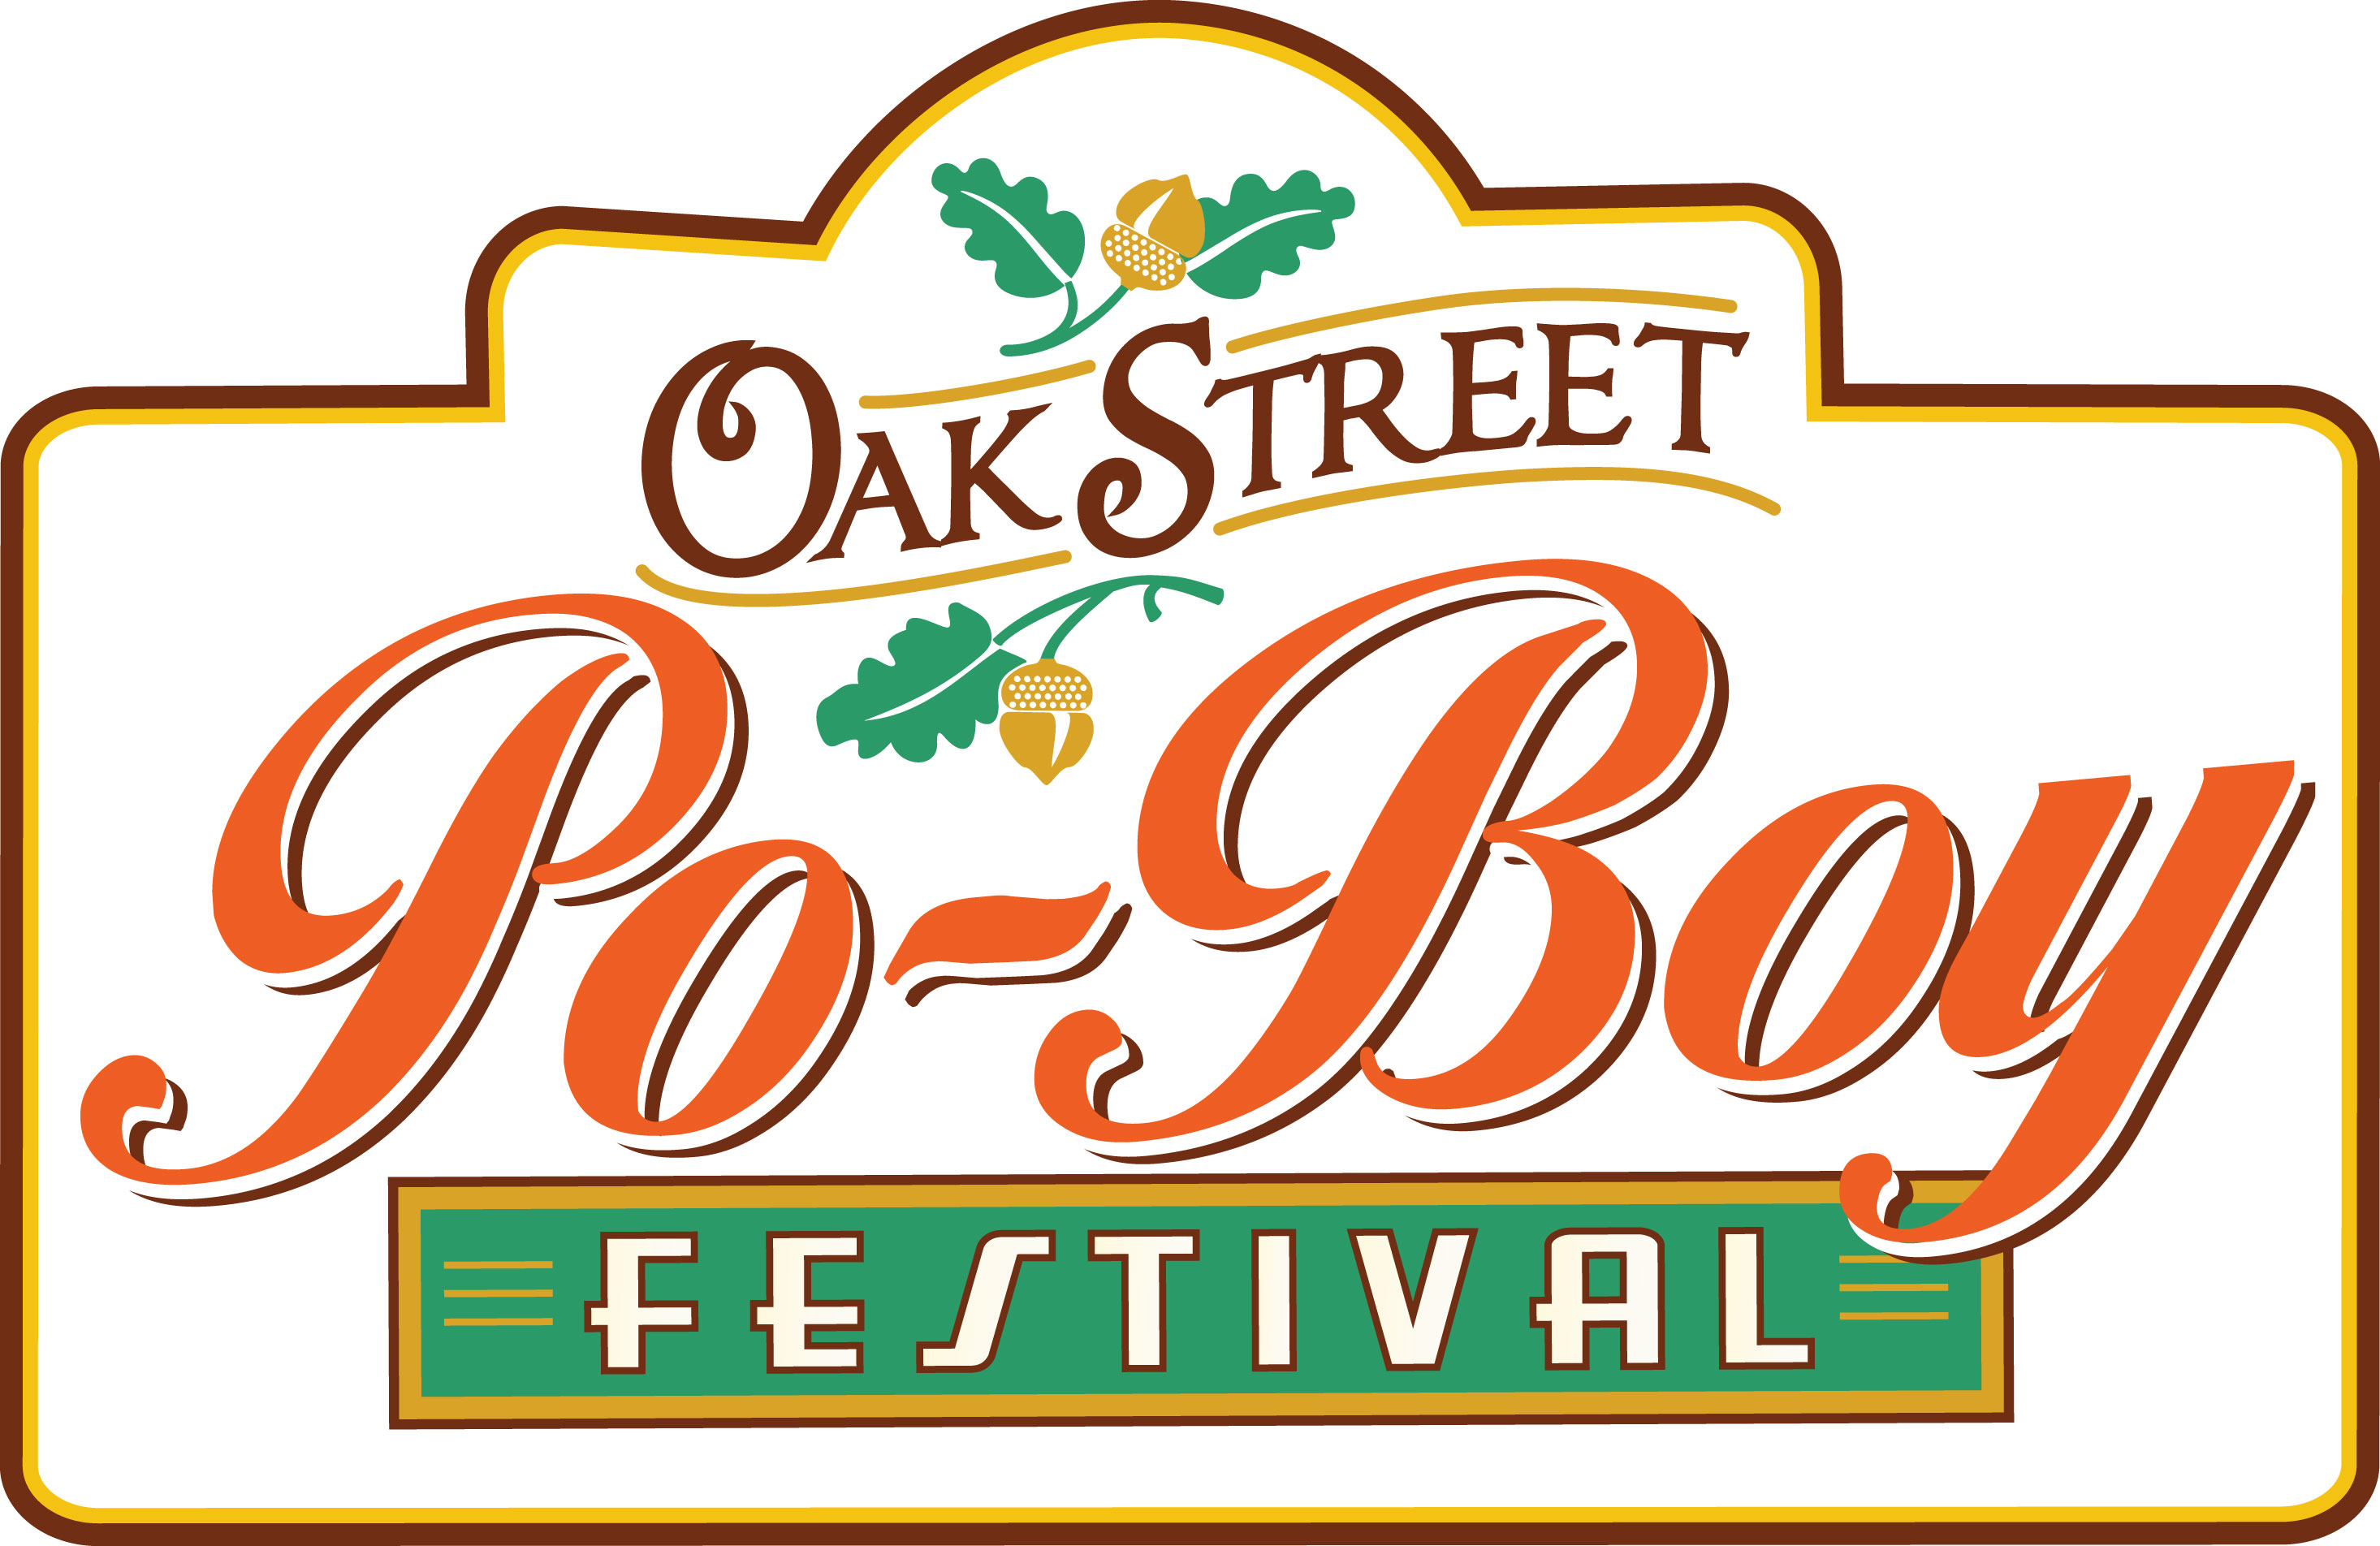 Oak Street Po-Boy Festival 2012 New Orleans